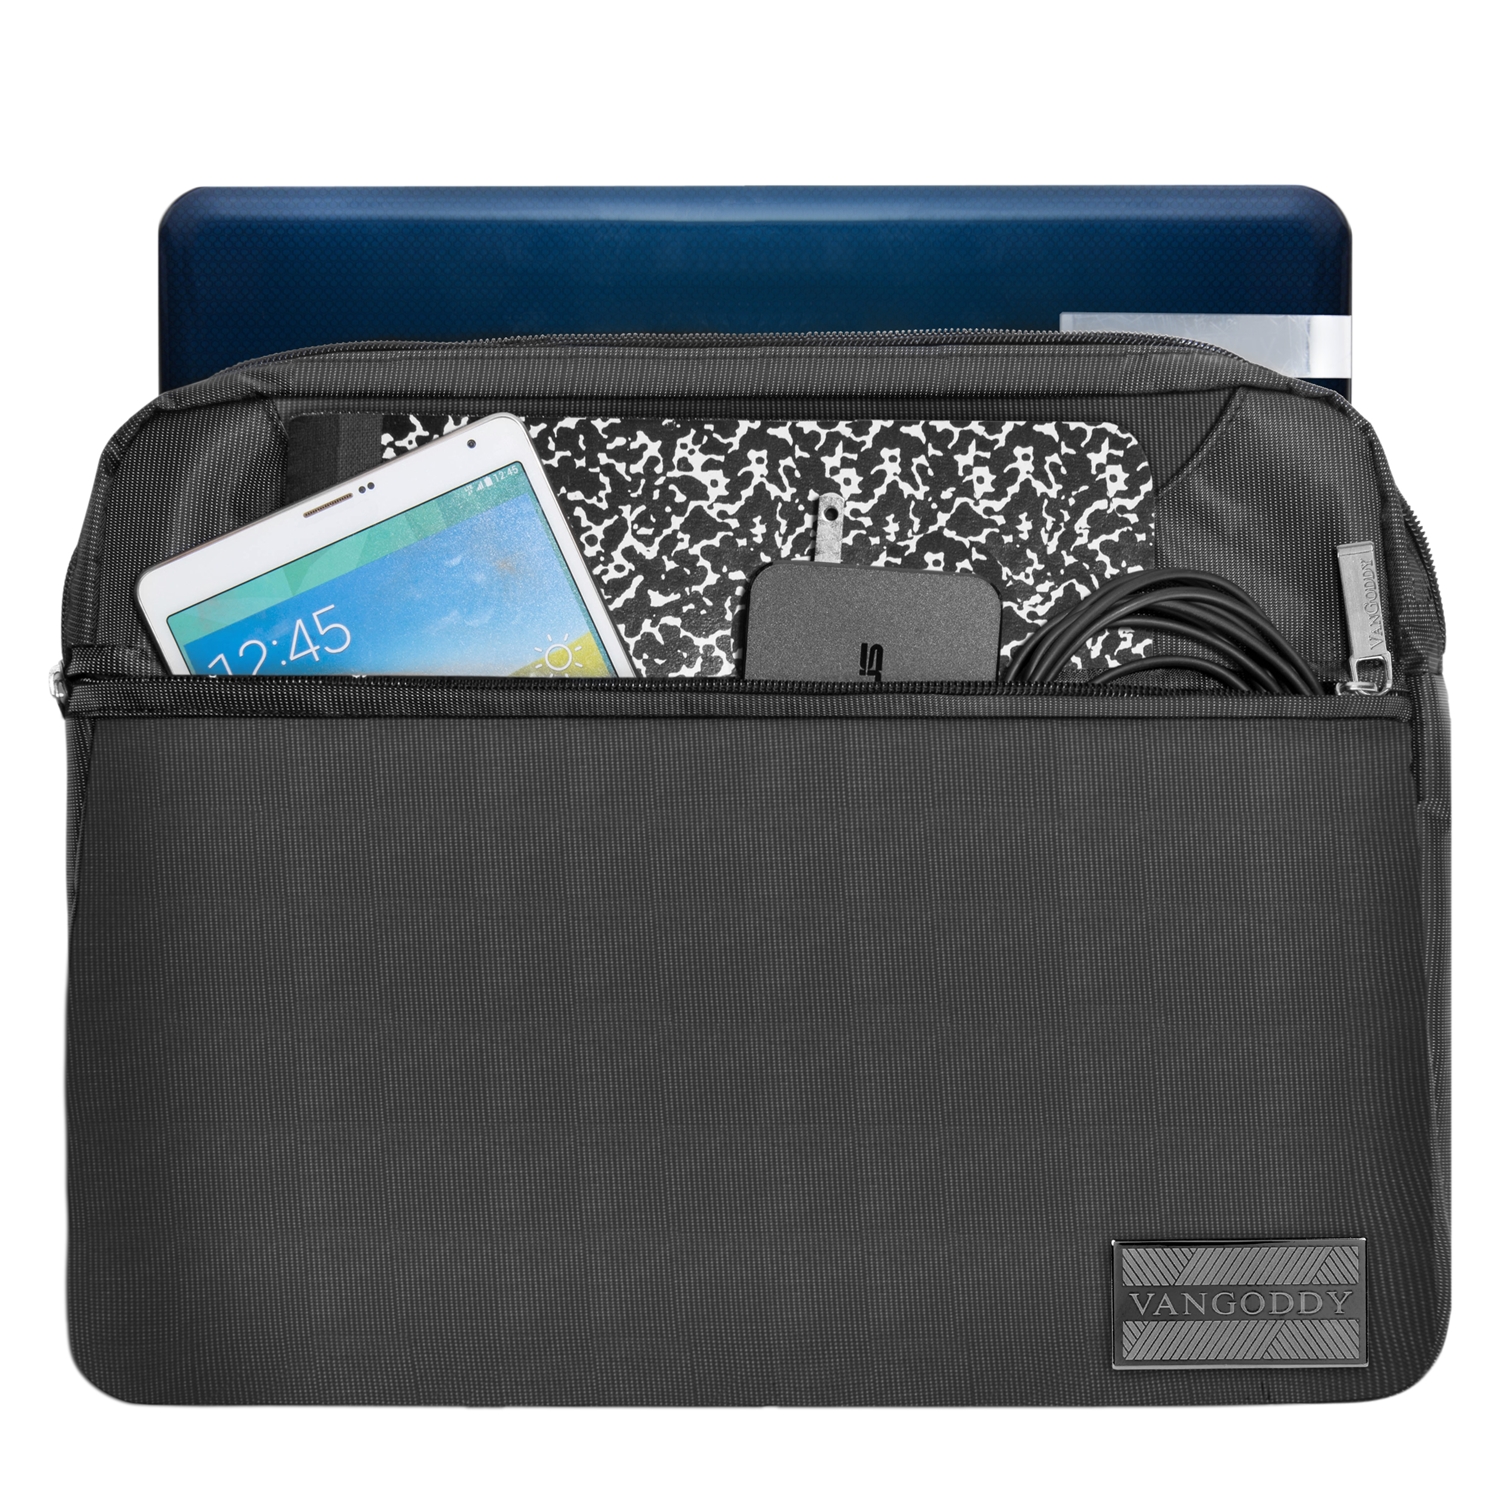 VANGODDY NineO Over the Shoulder Notebook Messenger Bag fits Dell 15, 15.6 inch Laptops